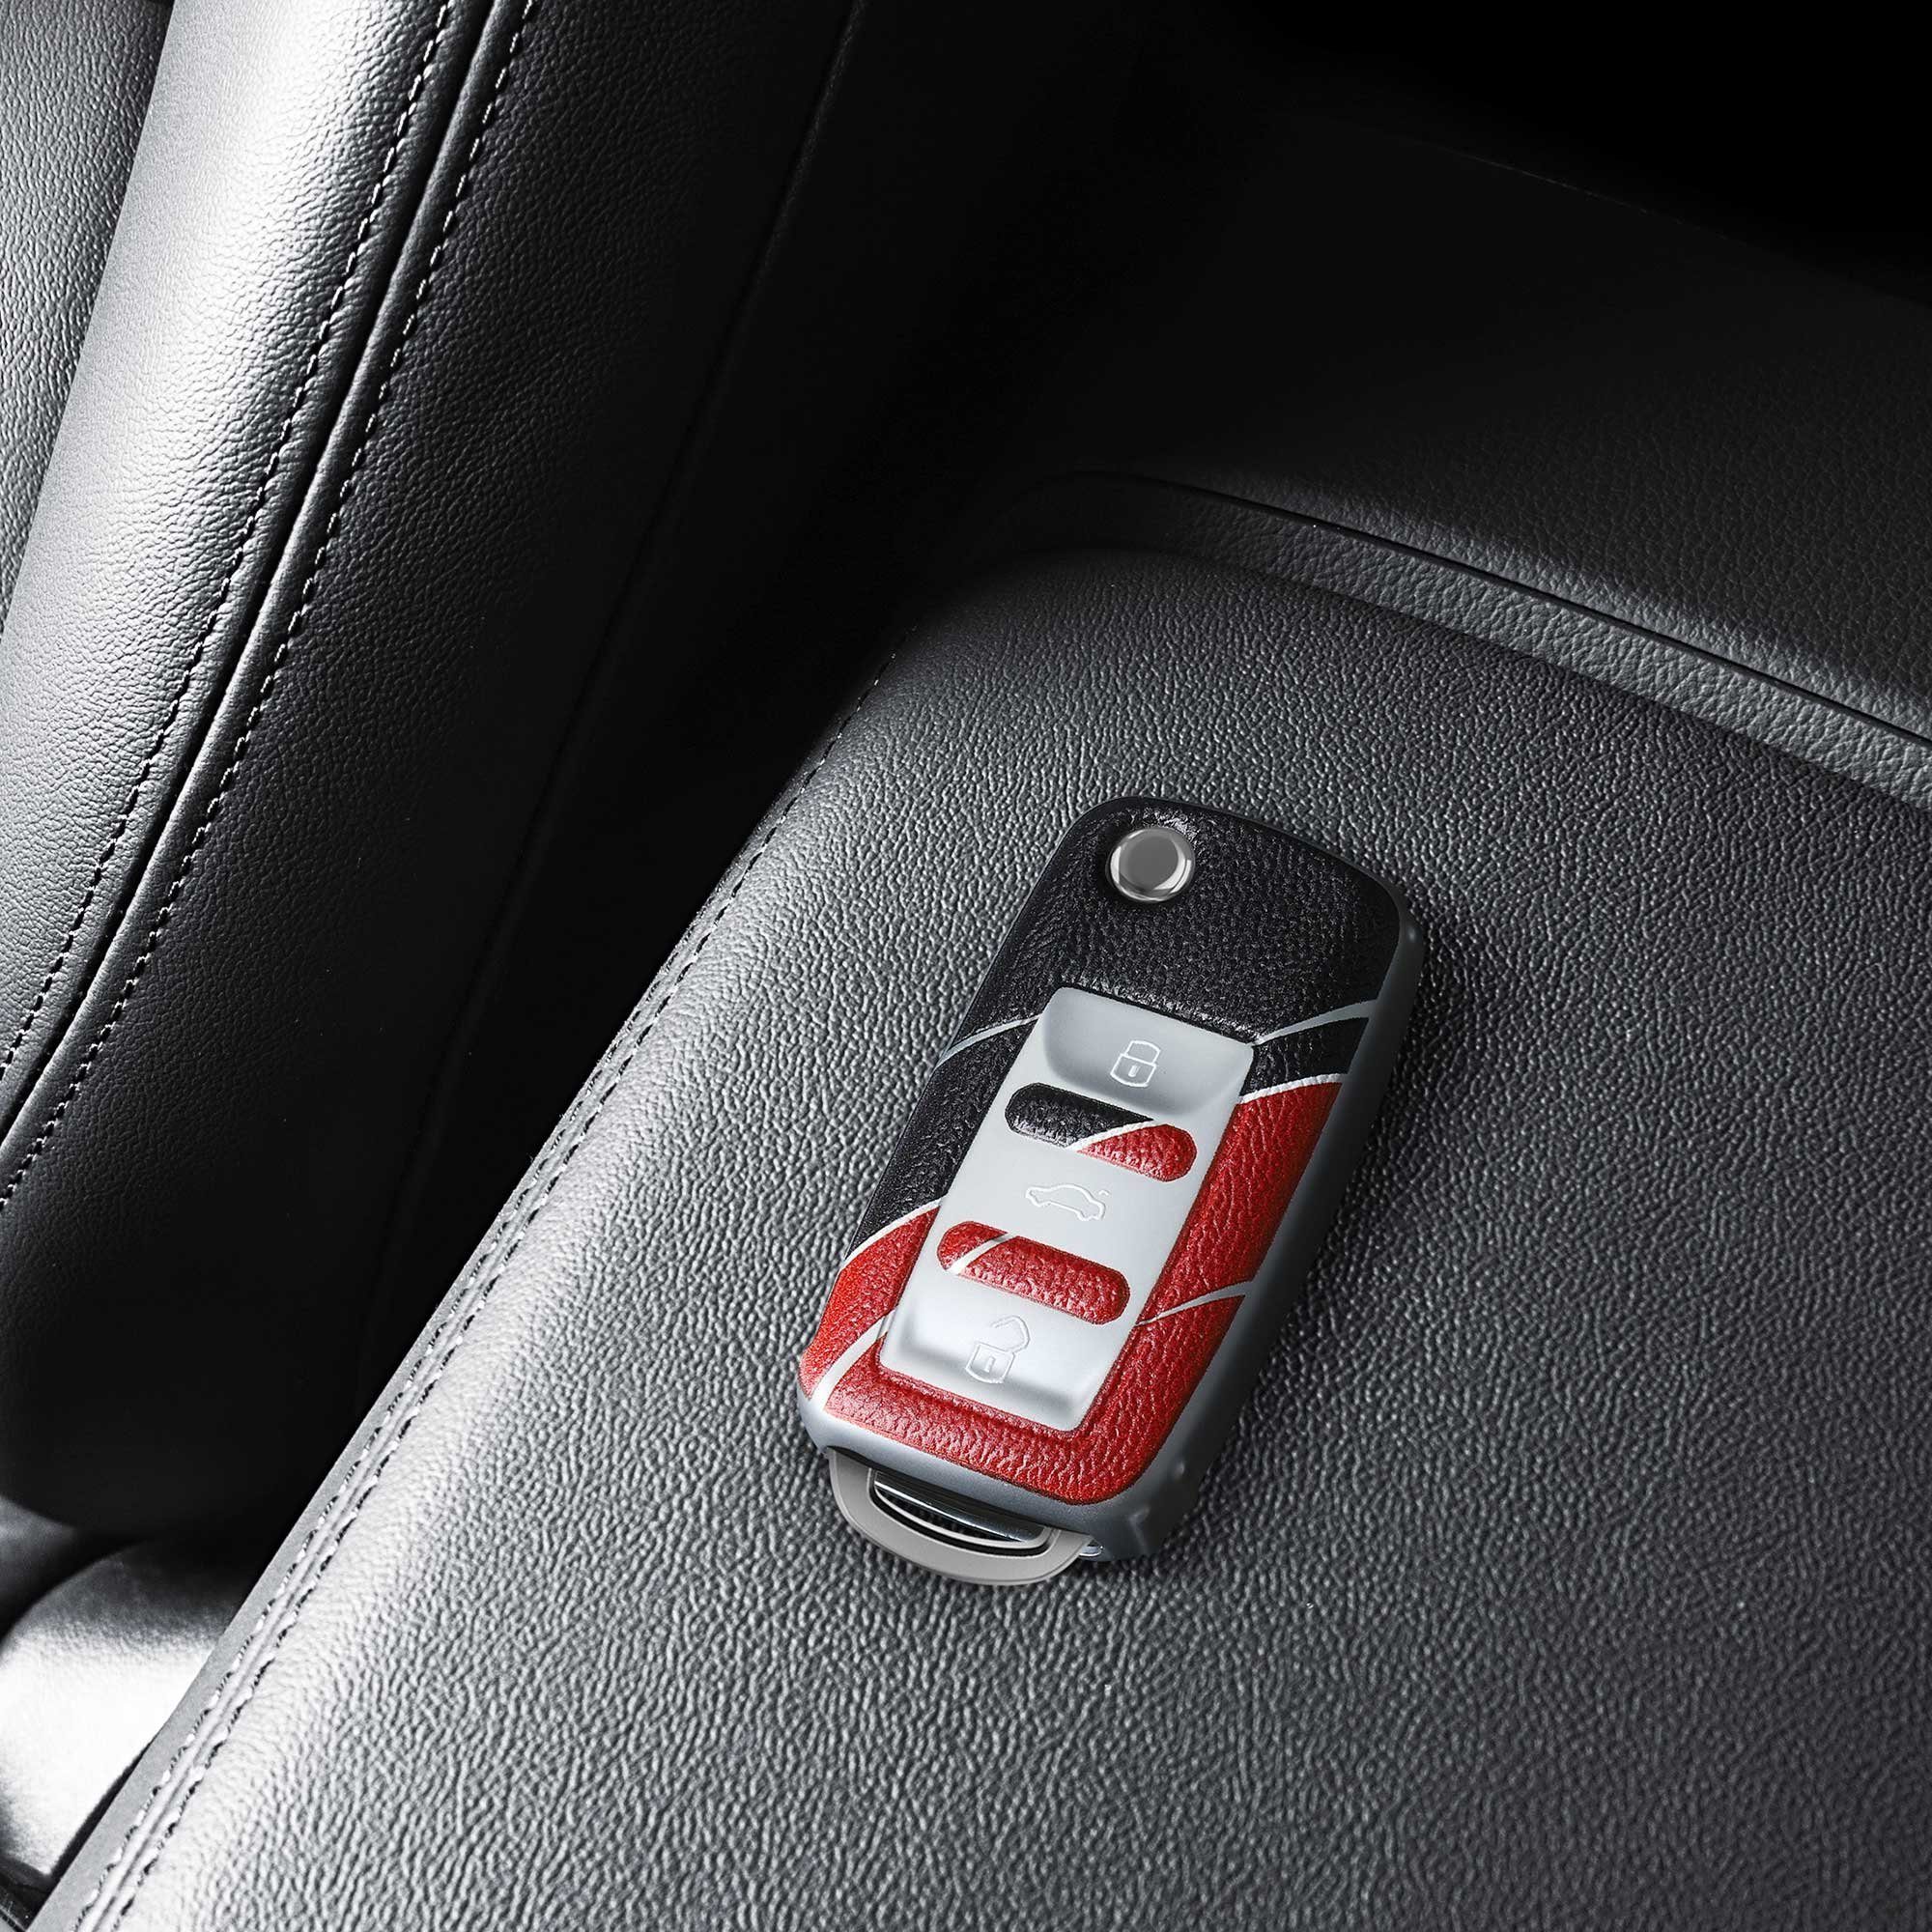 Autoschlüssel TPU Schlüsseltasche VW Seat, Hülle kwmobile für Schutzhülle Skoda Cover Schlüsselhülle Grau